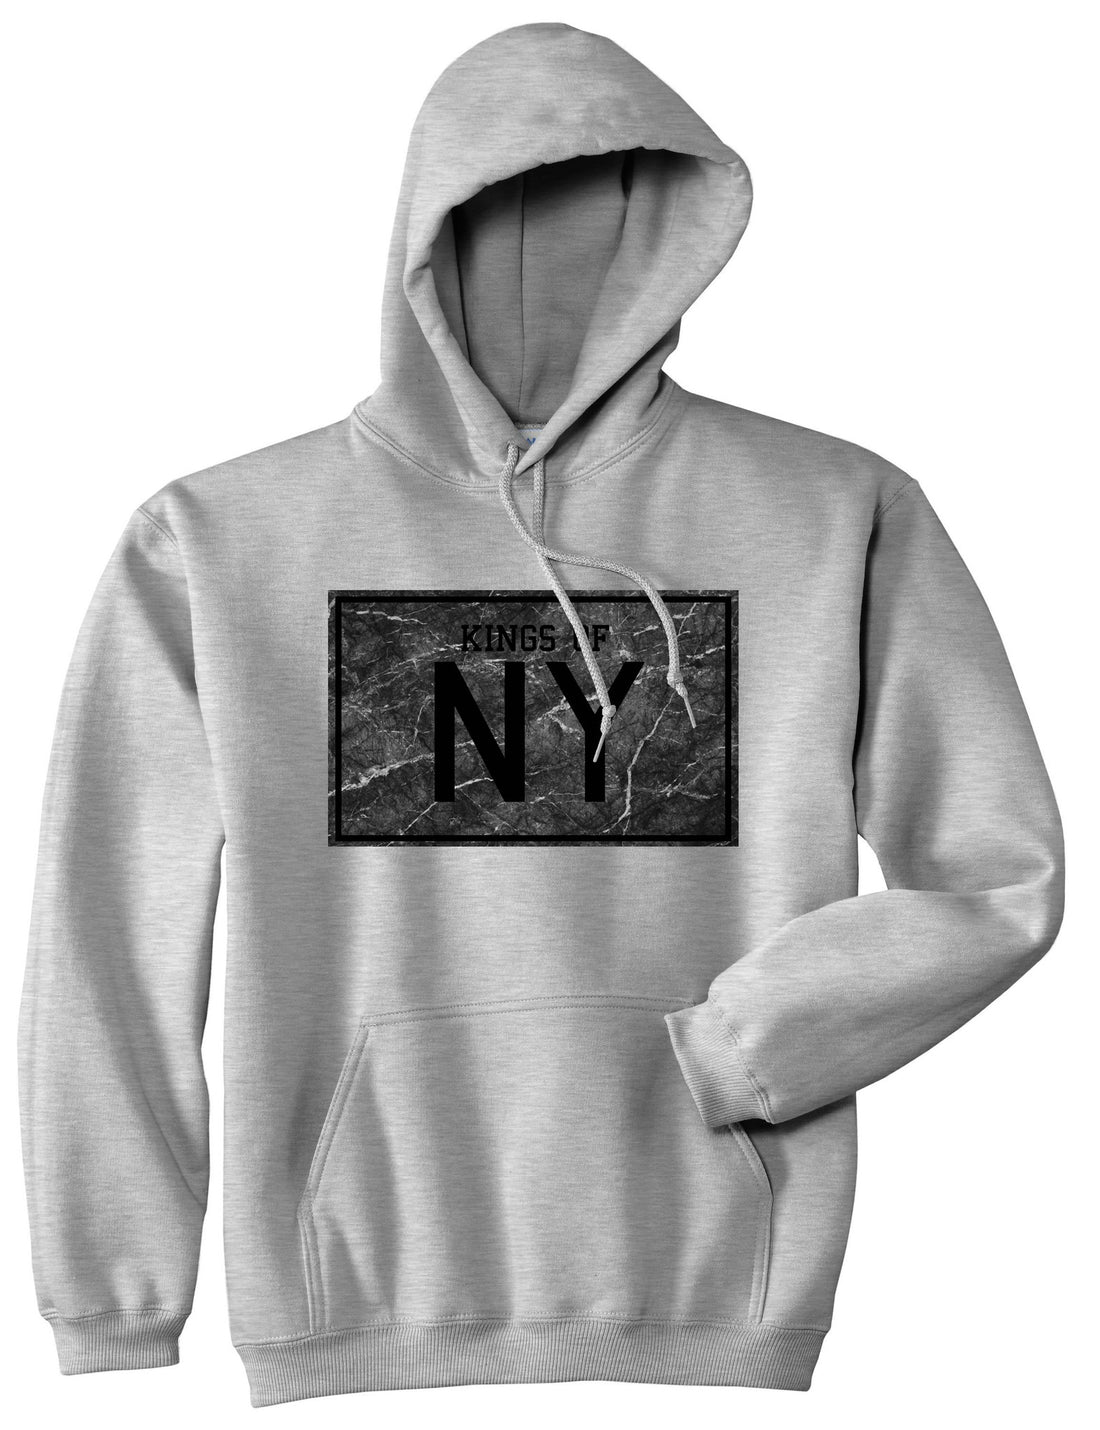 Granite NY Logo Print Pullover Hoodie Hoody in Grey by Kings Of NY